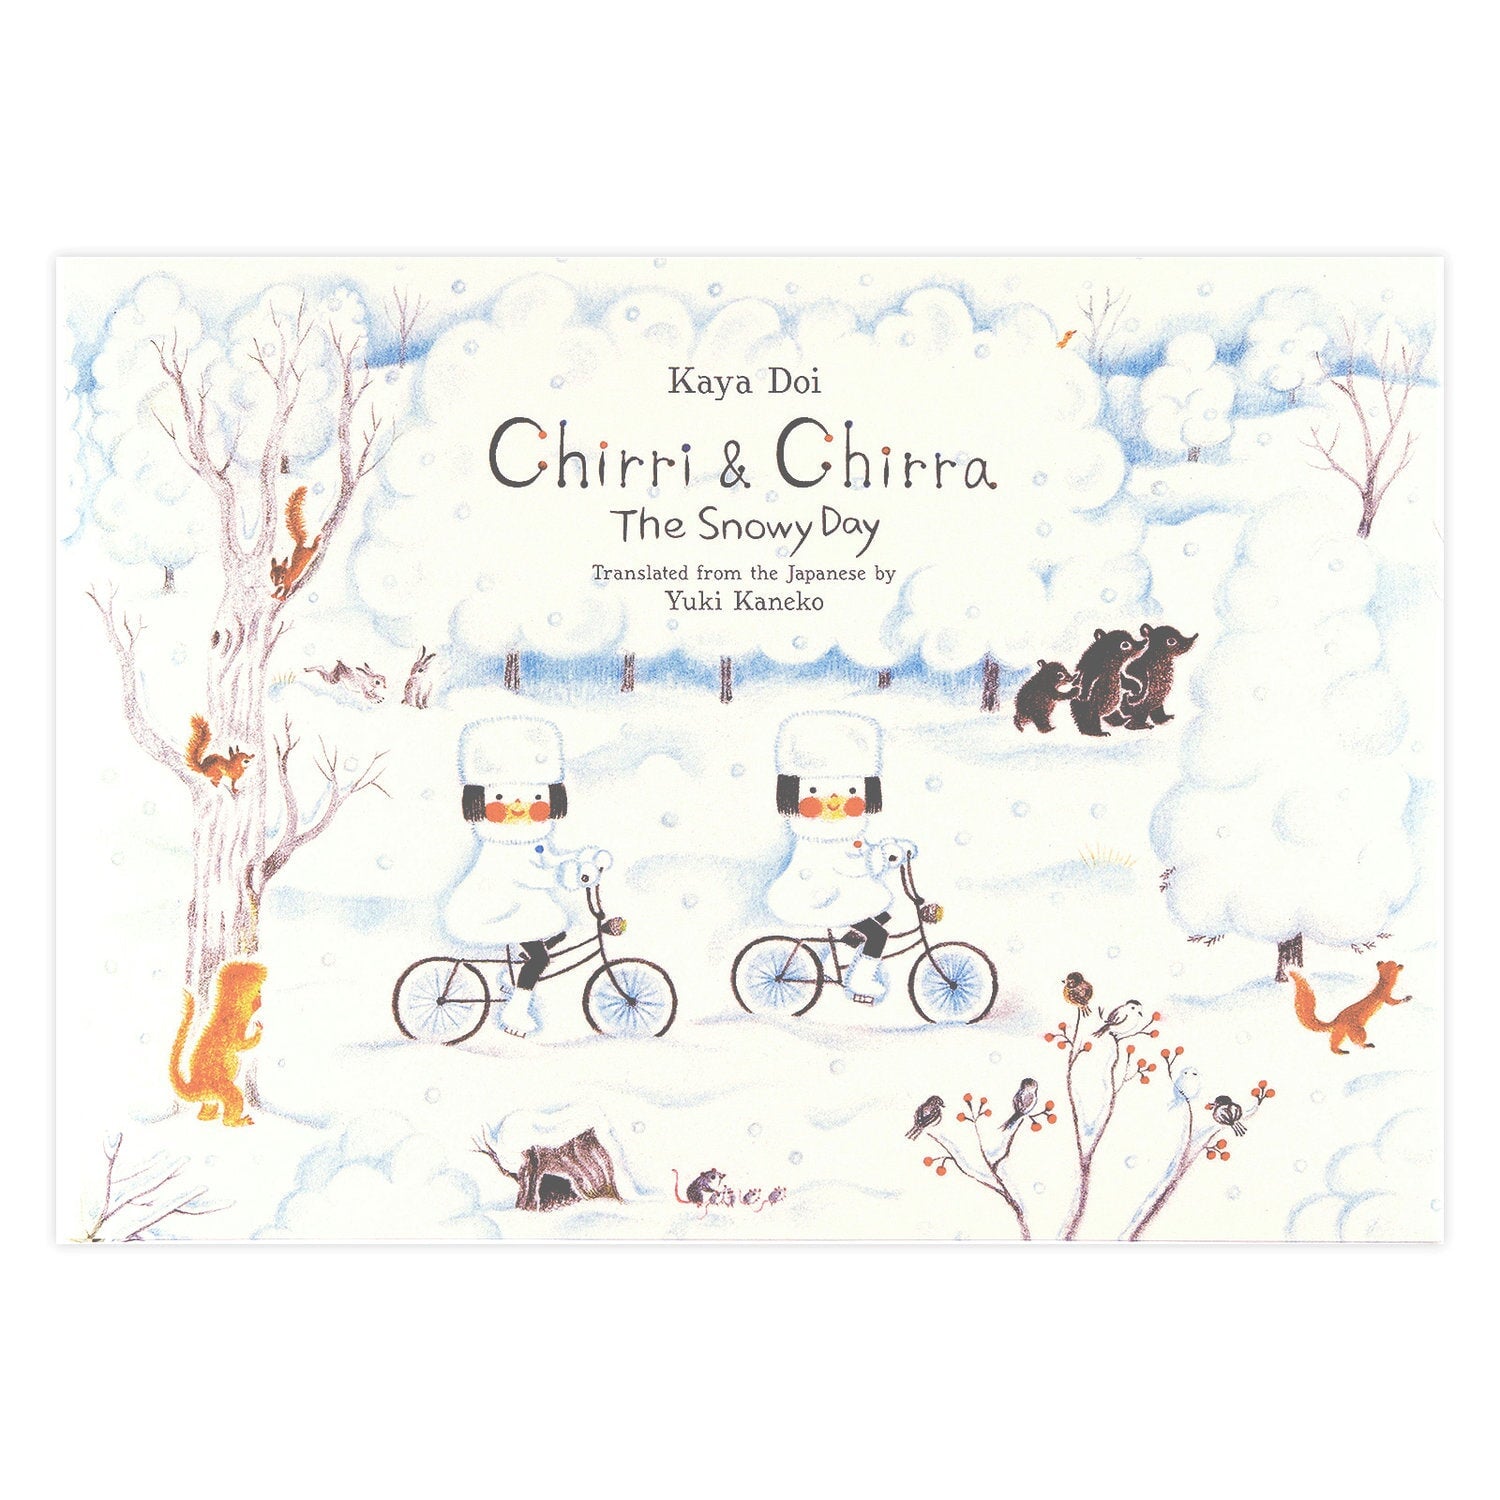 Chirri and Chirra The Snowy Day by Kaya Doi